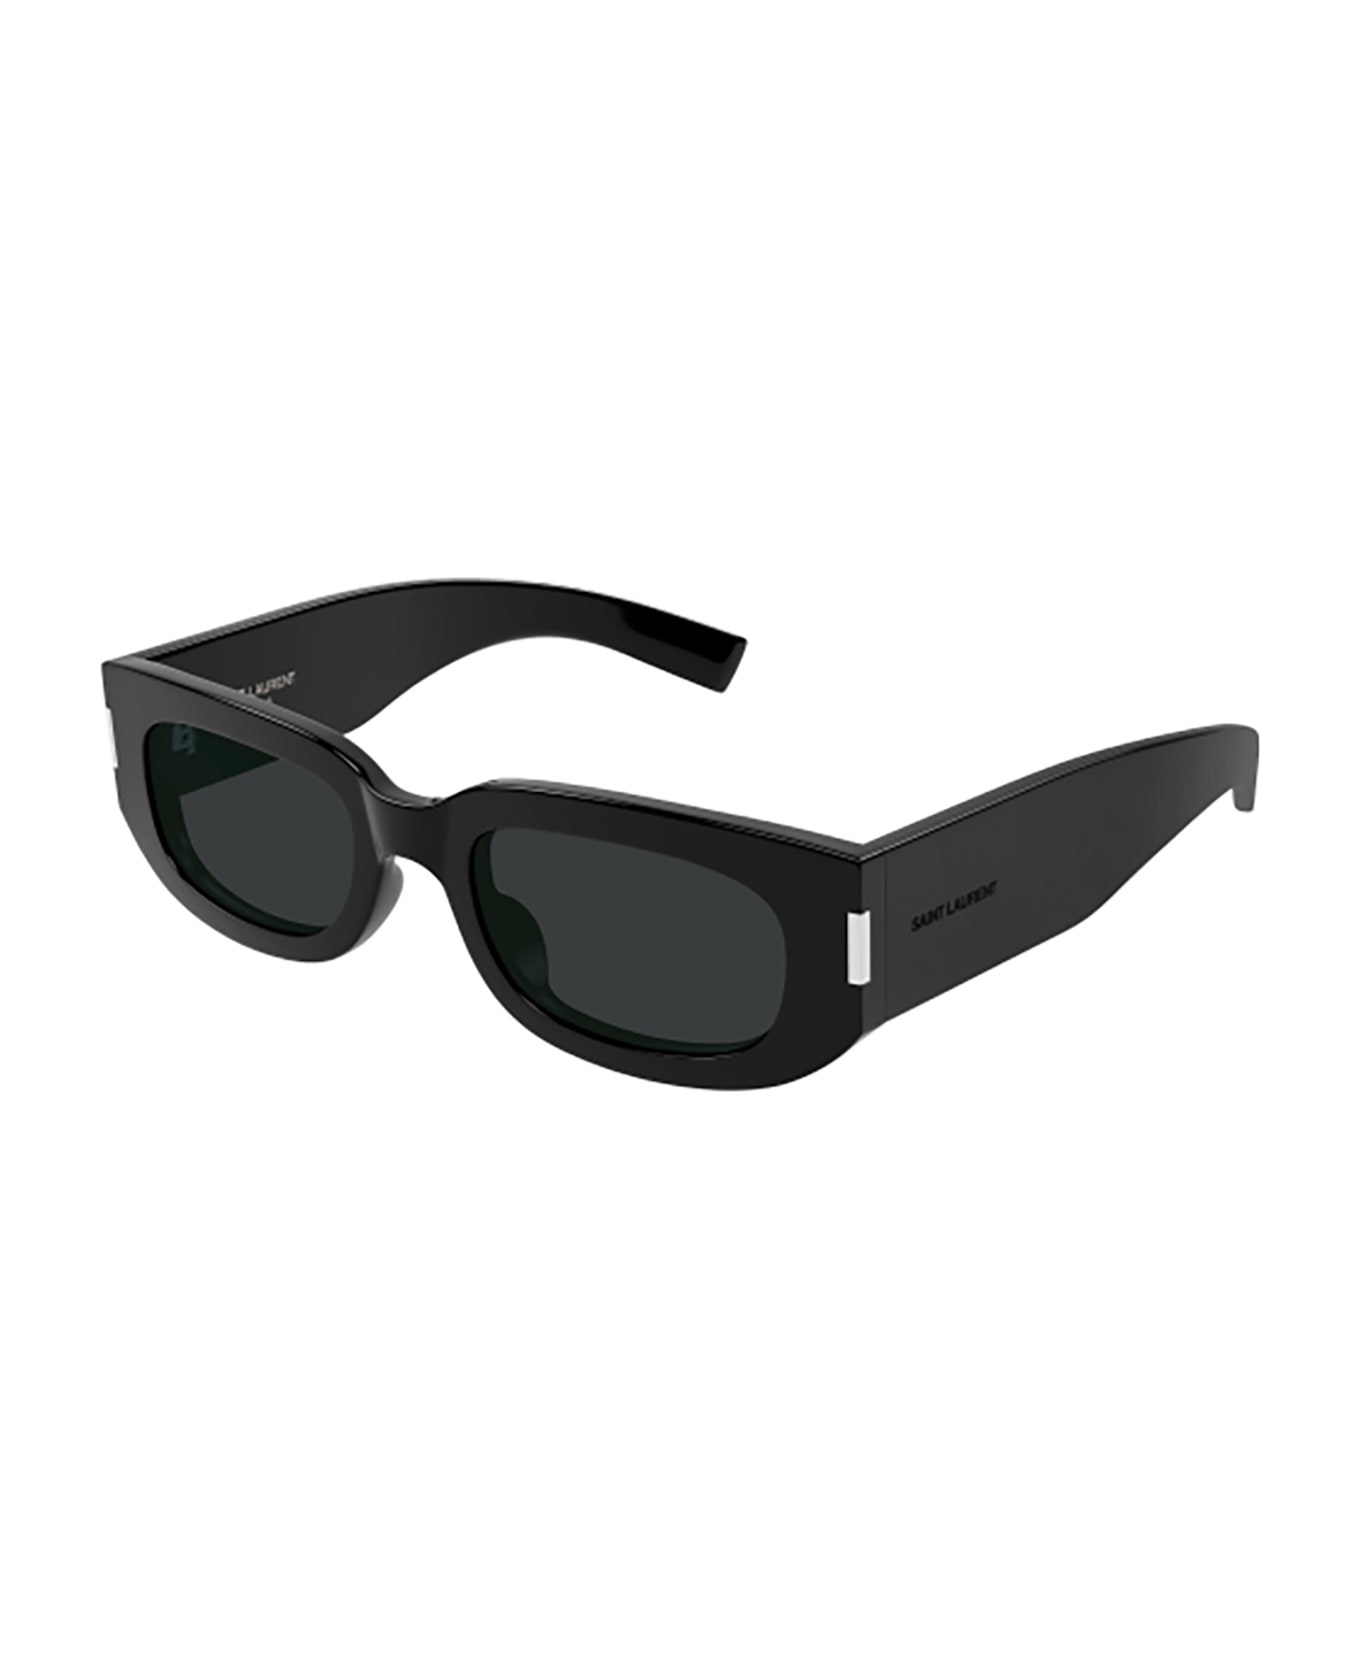 Saint Laurent Eyewear SL 697 Sunglasses - Black Black Black